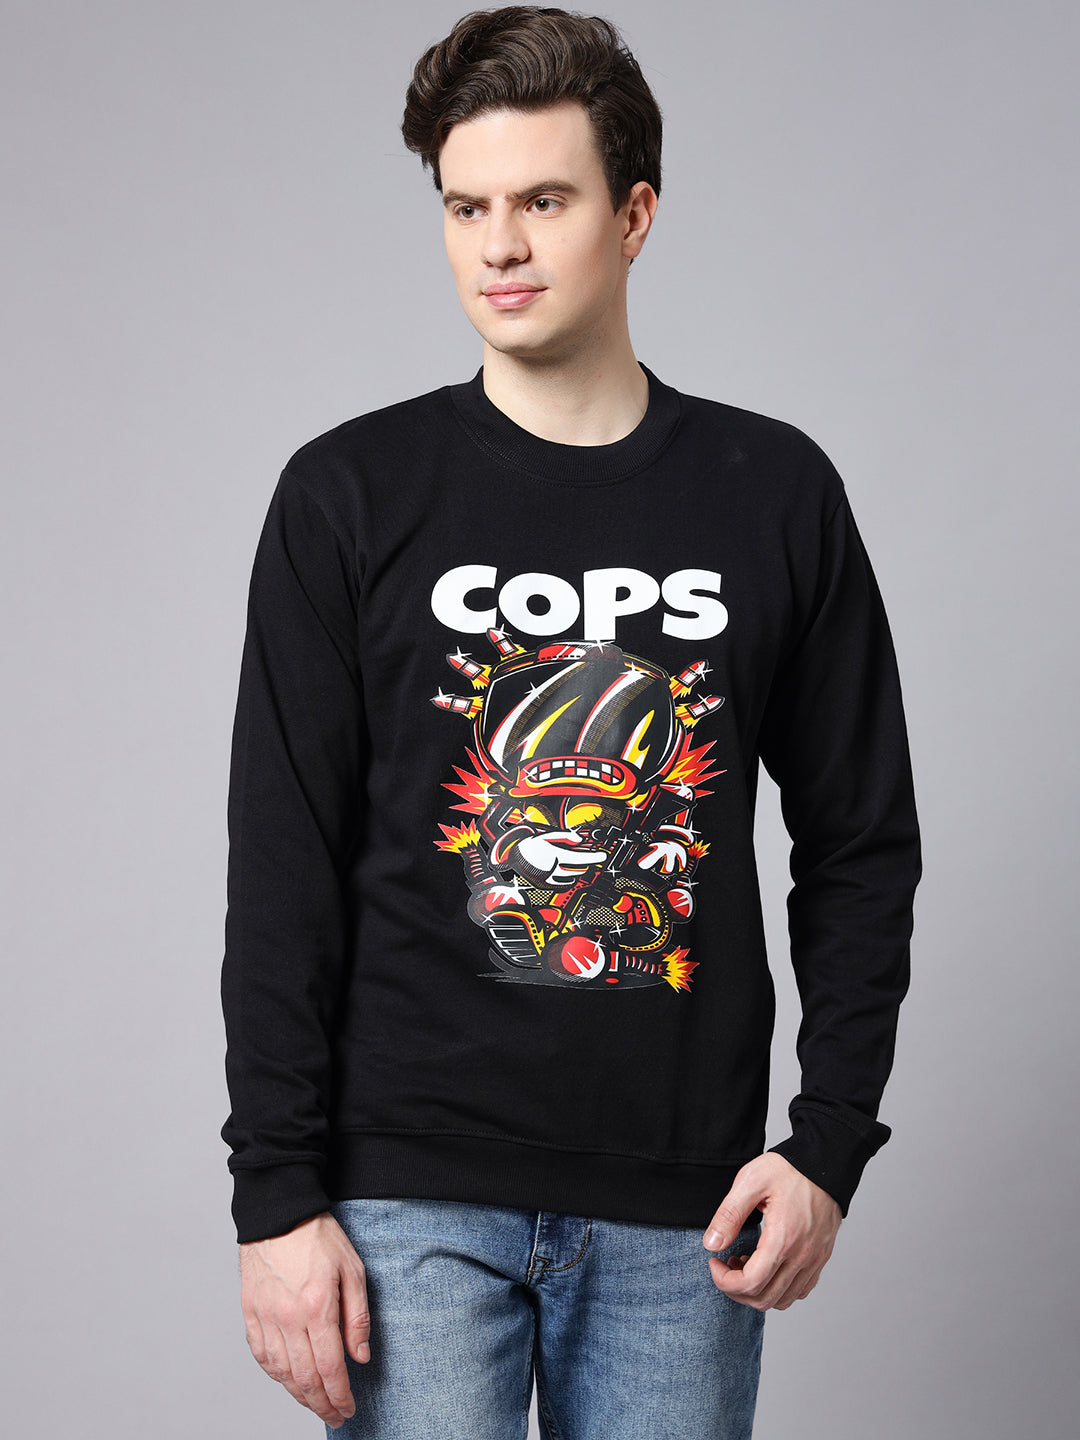 Black Cops Sweatshirt